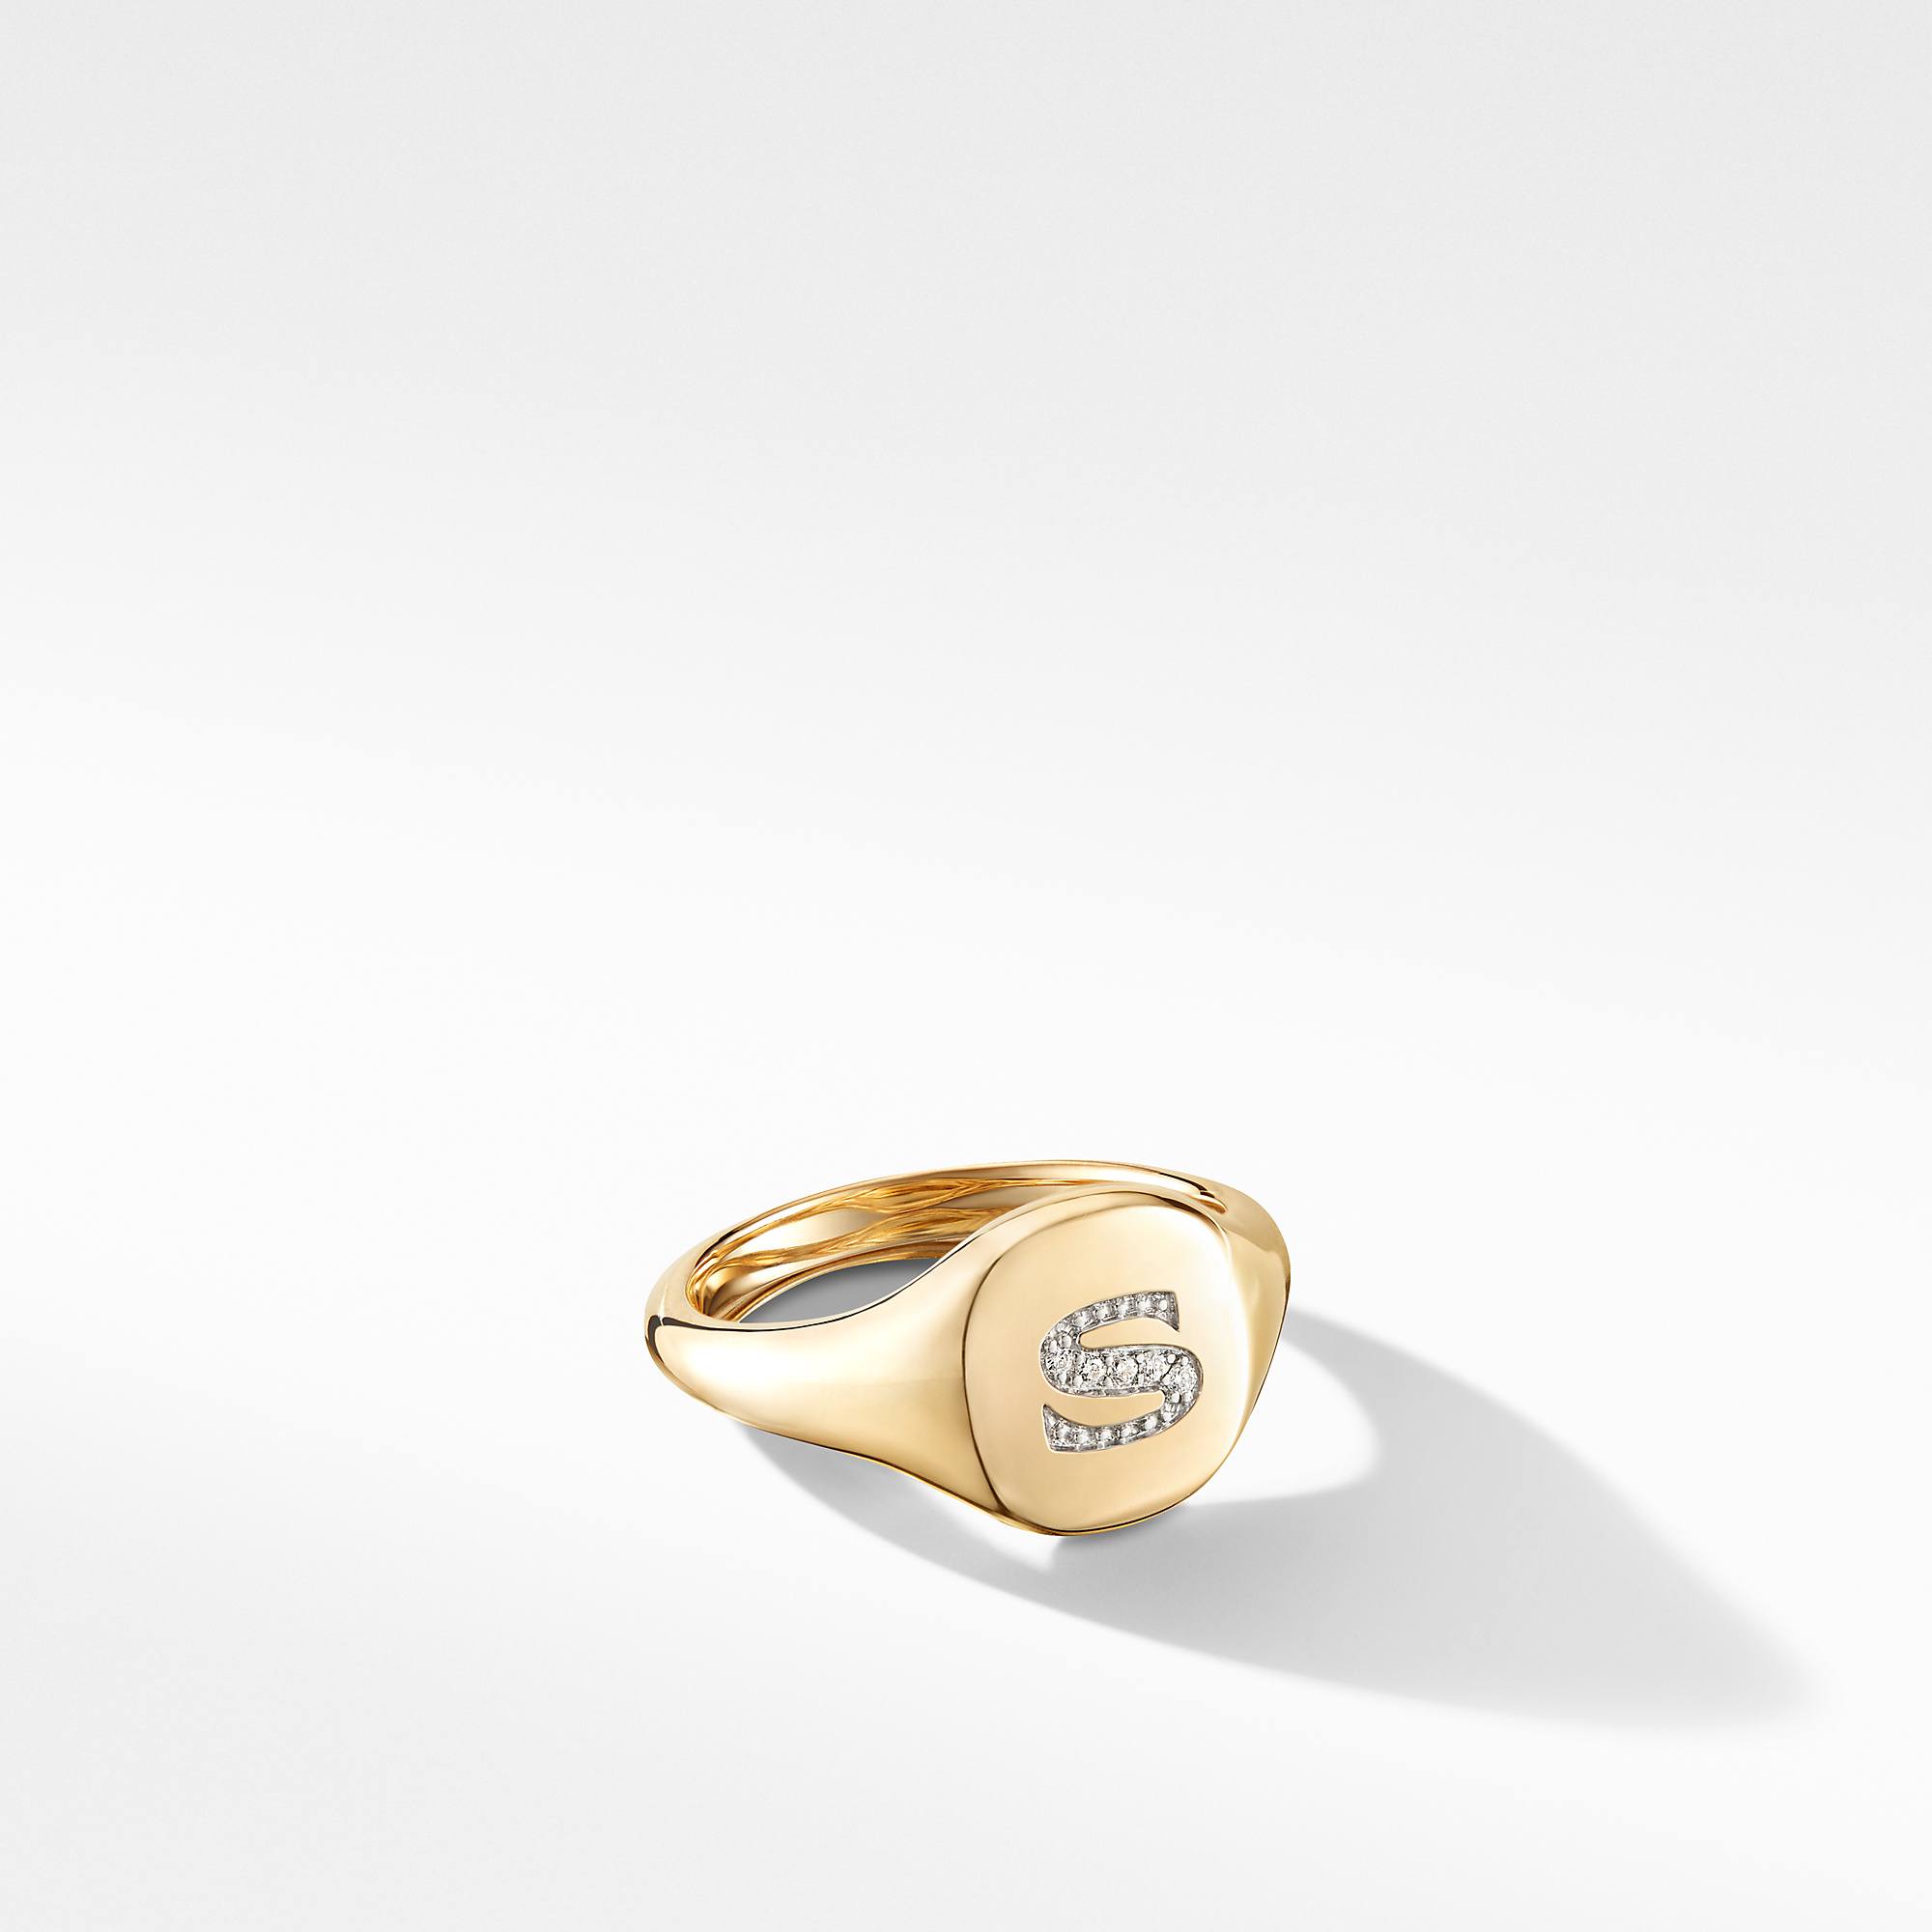 David Yurman Mini DY "S" initial Pinky Ring in 18K Yellow Gold with Diamonds 0